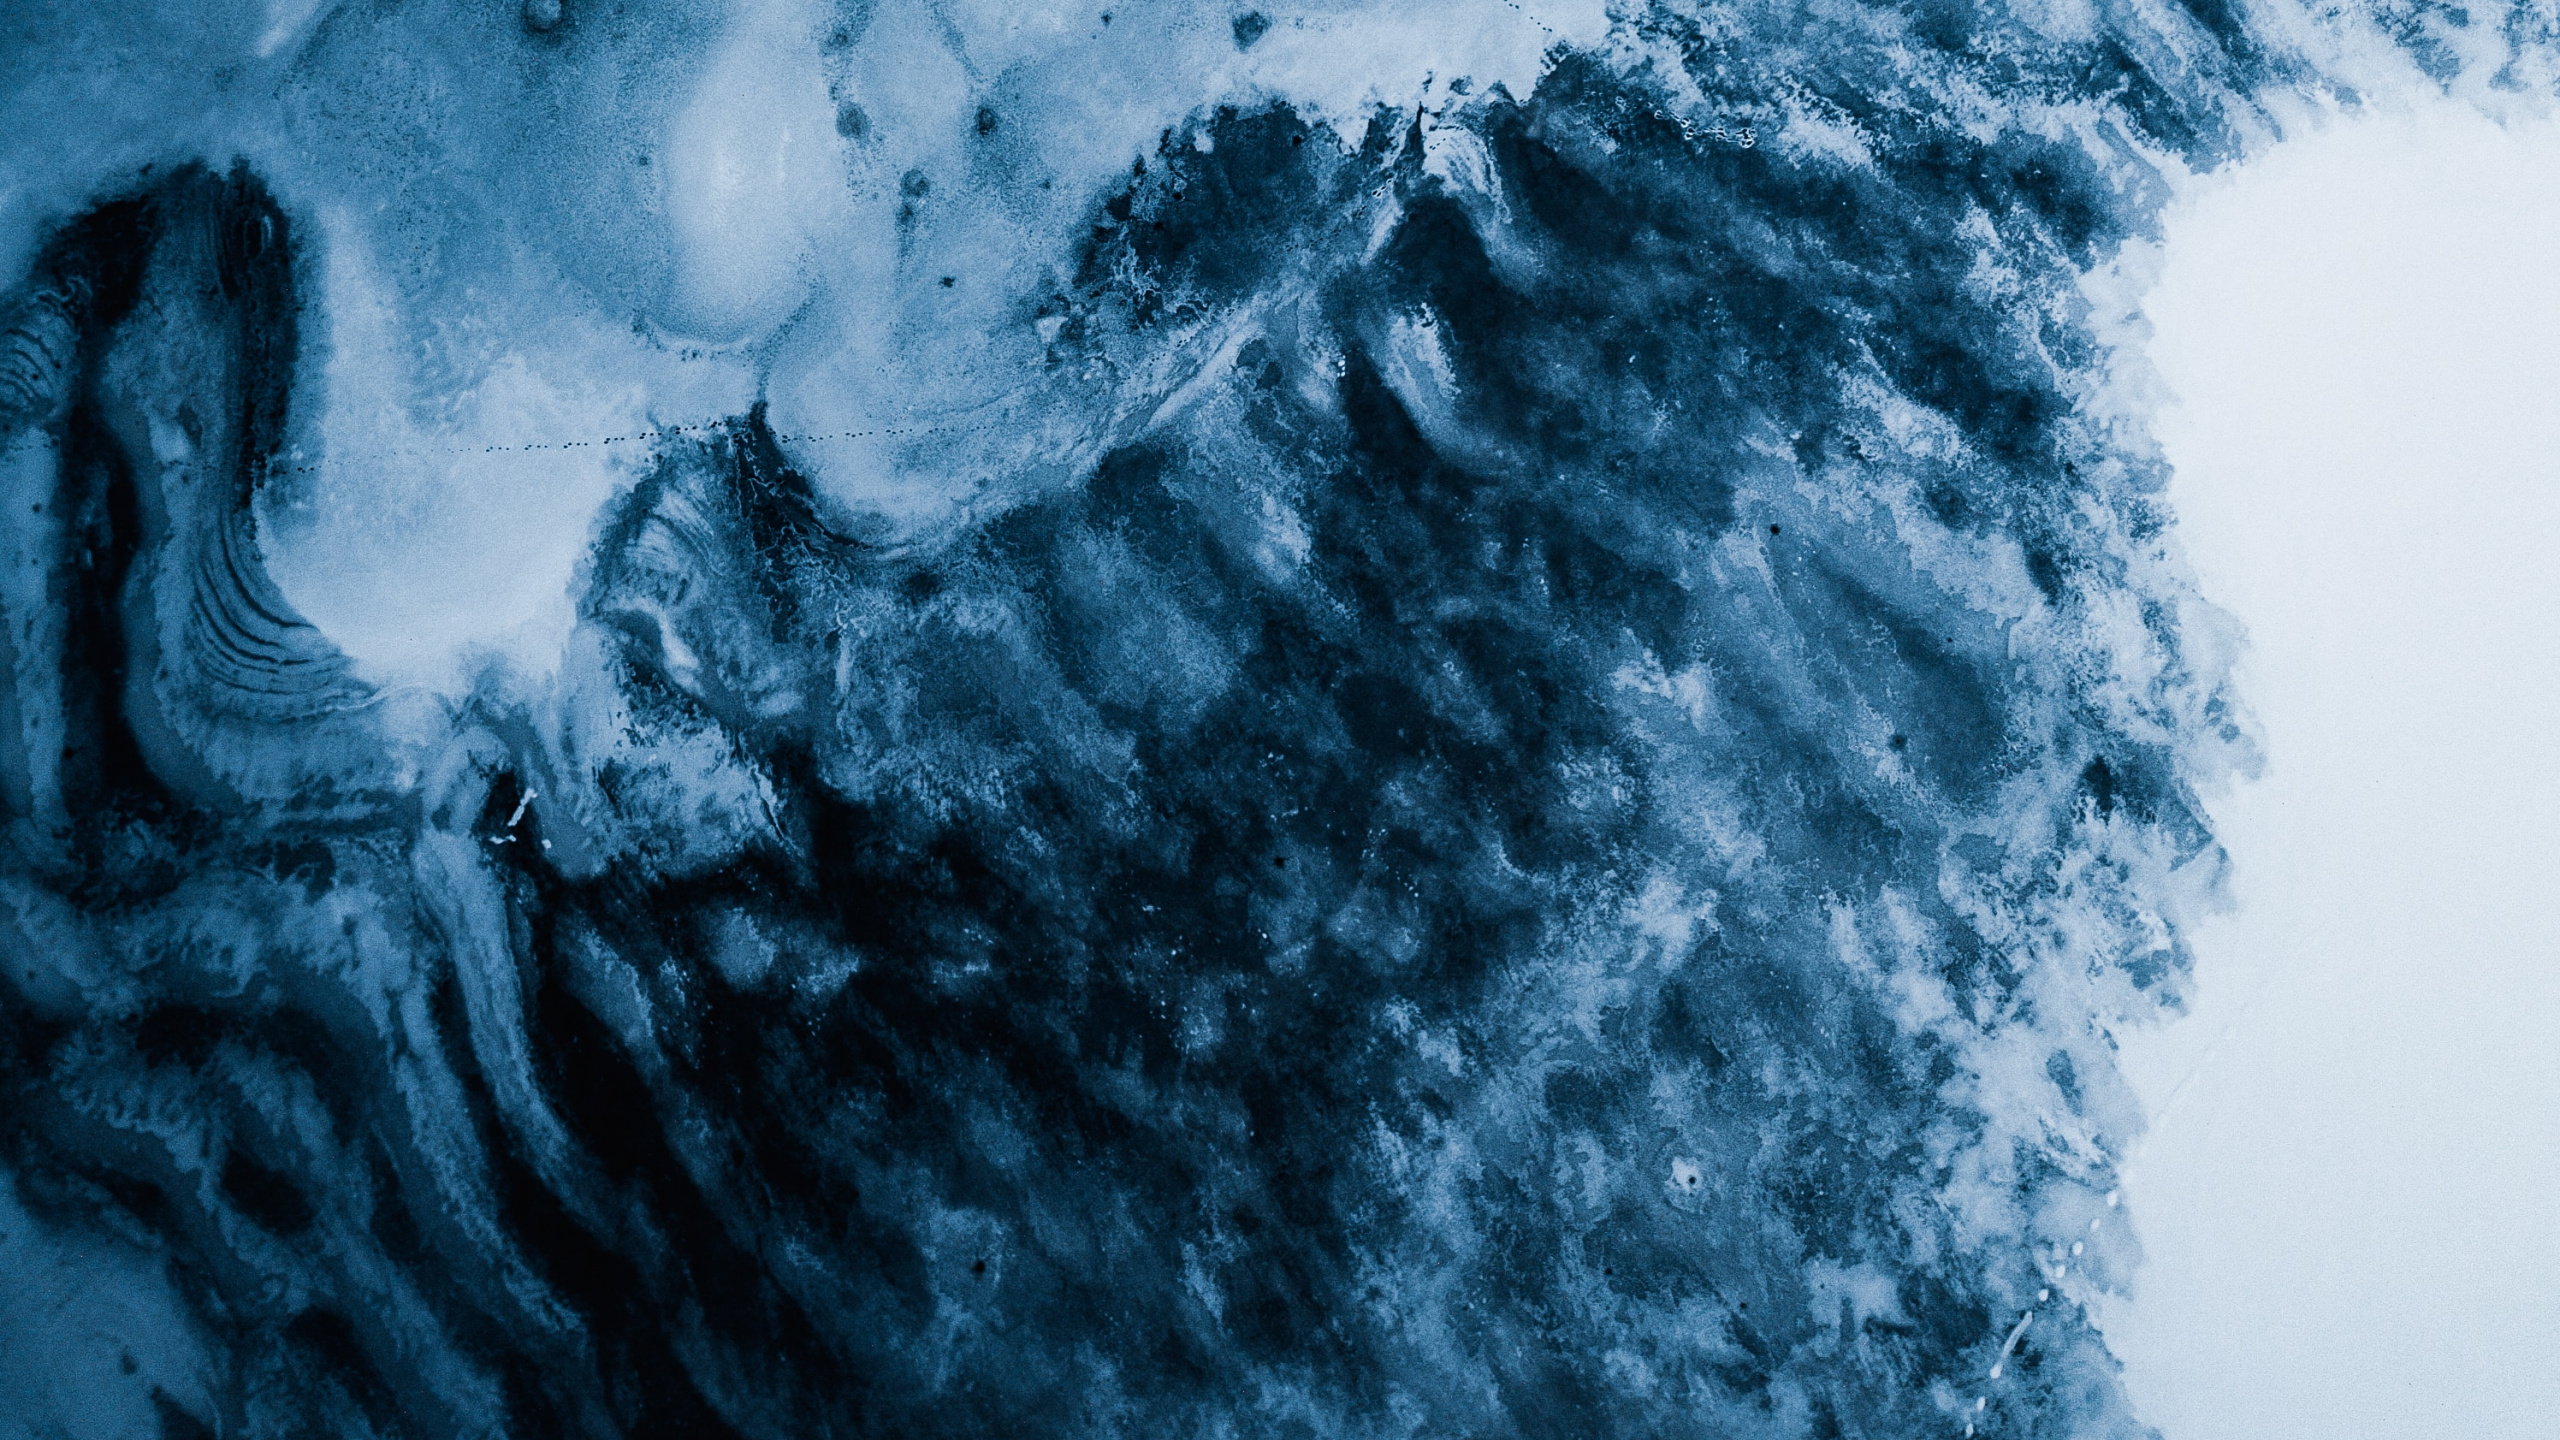 冰川, 冻结, 气氛, 冰川地貌, 天空 壁纸 2560x1440 允许